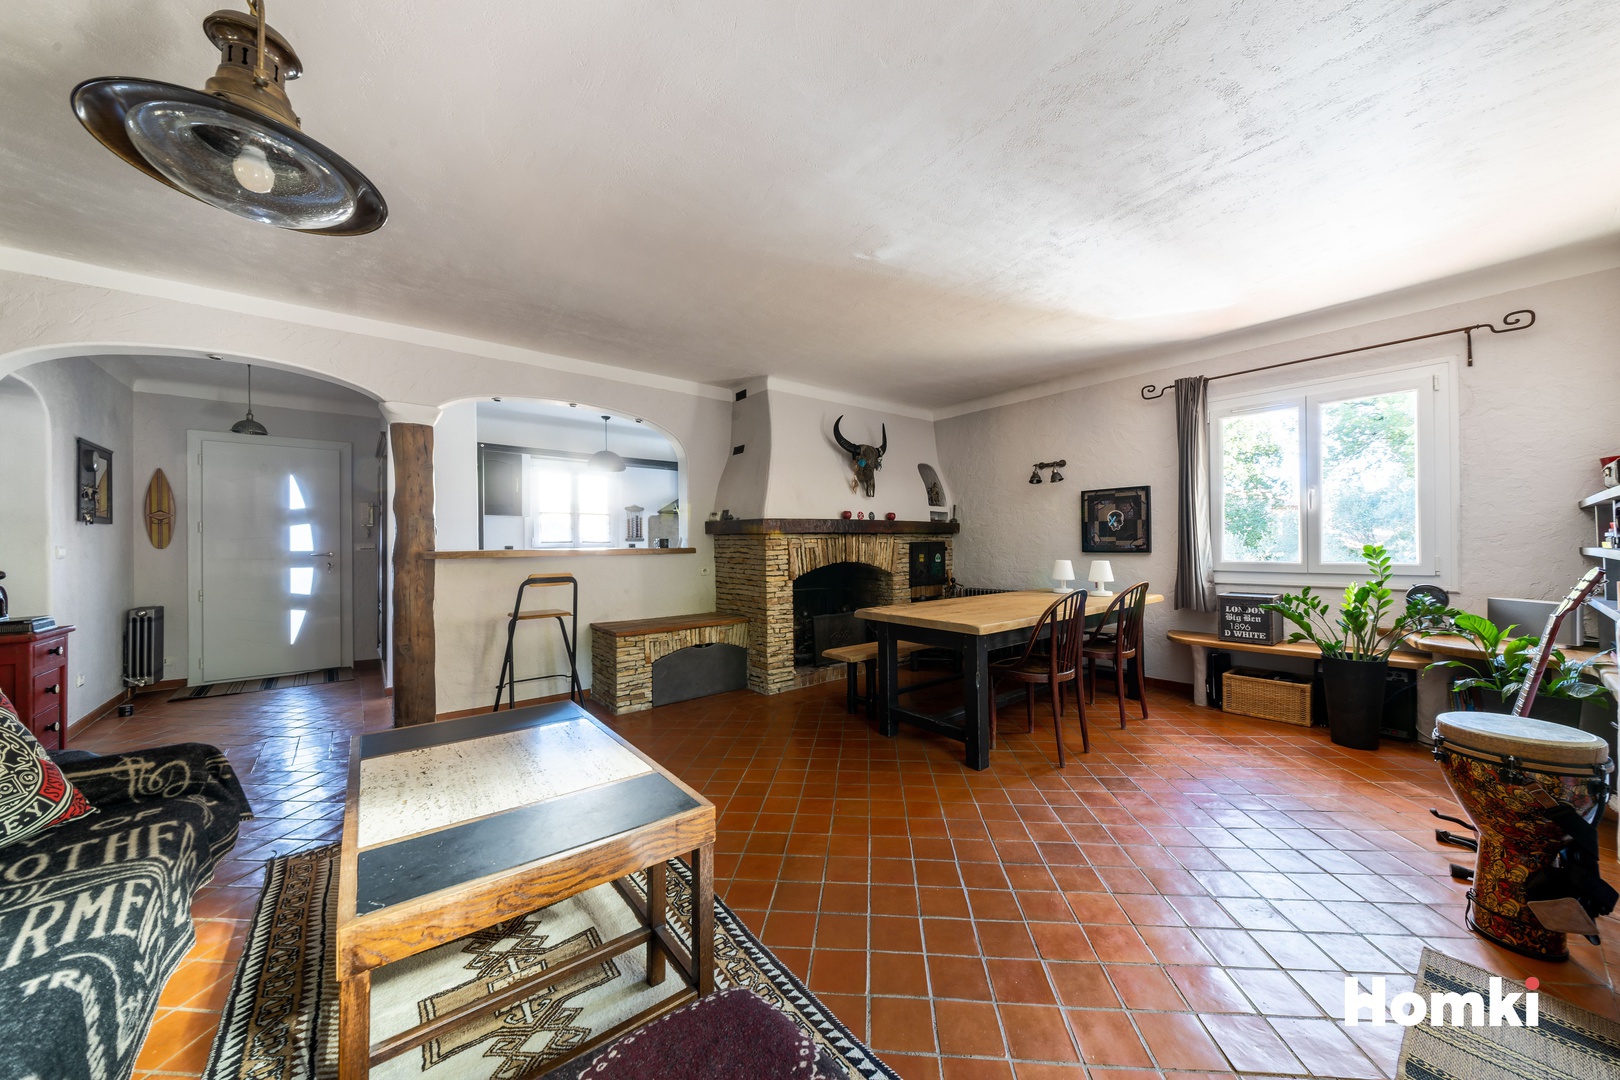 Homki - Vente Maison/villa  de 175.0 m² à Peynier 13790